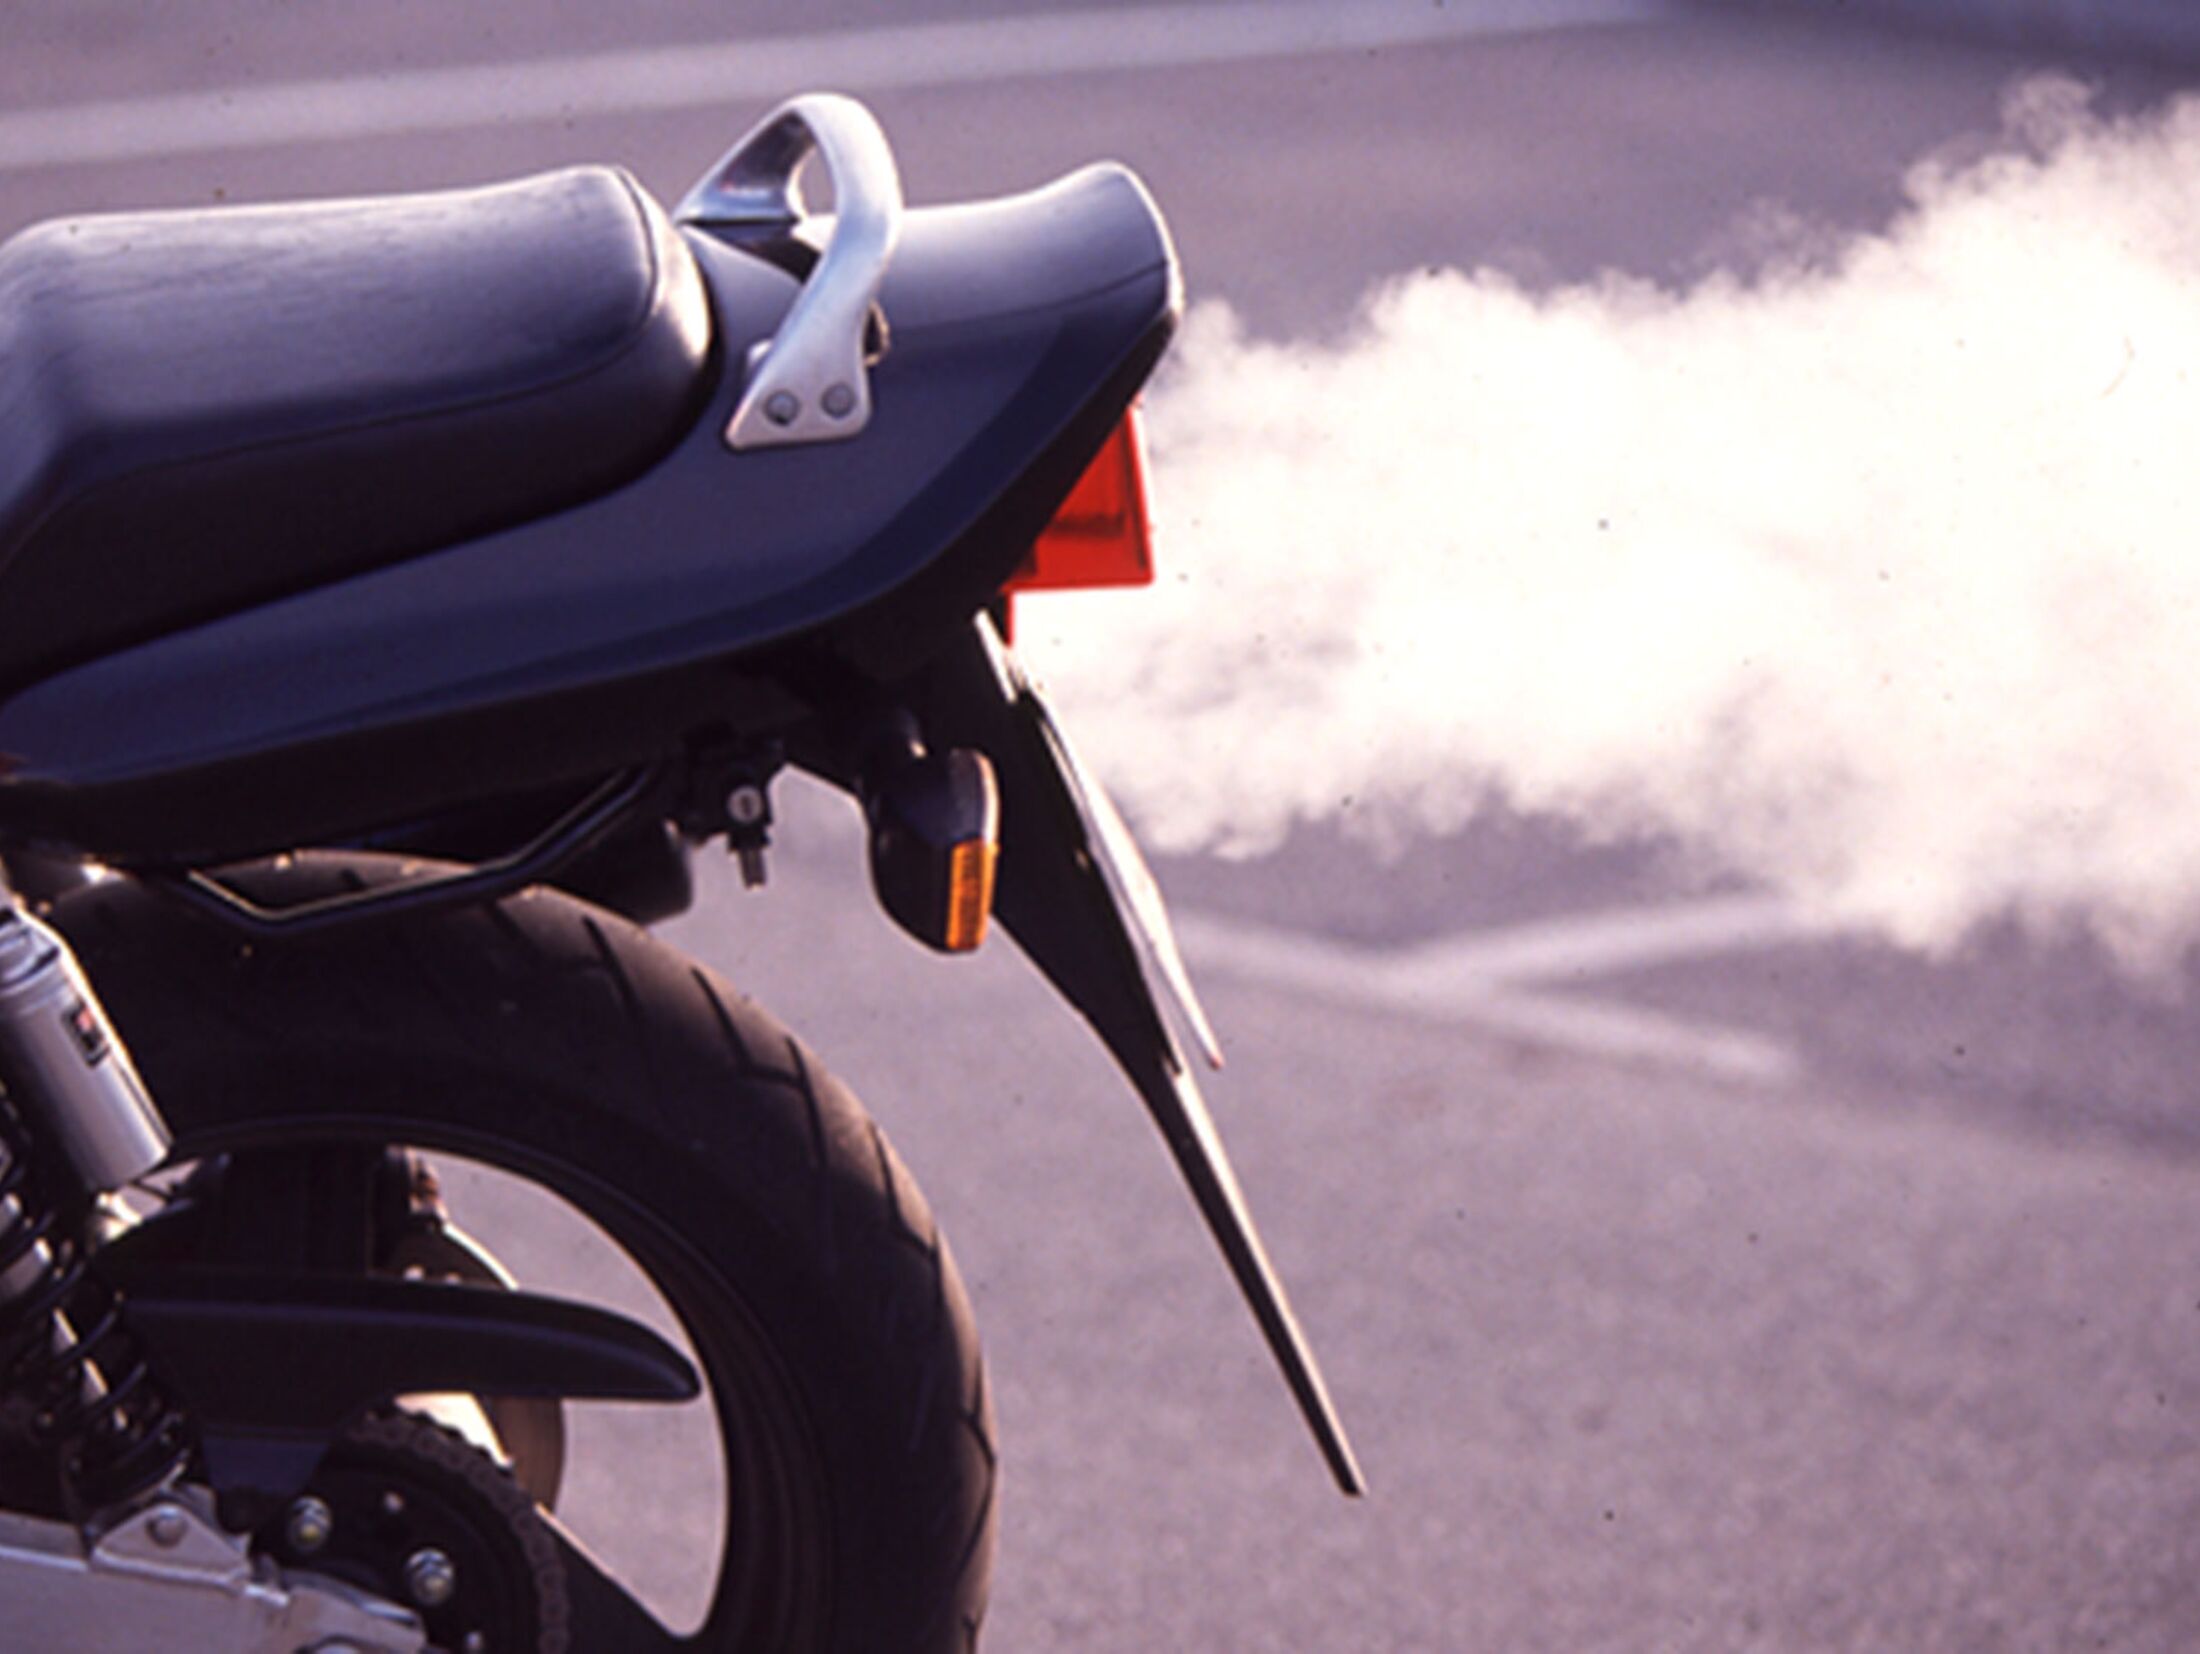 Vorteile und Nachteile von Lithium Ionen Akkus im Motorrad